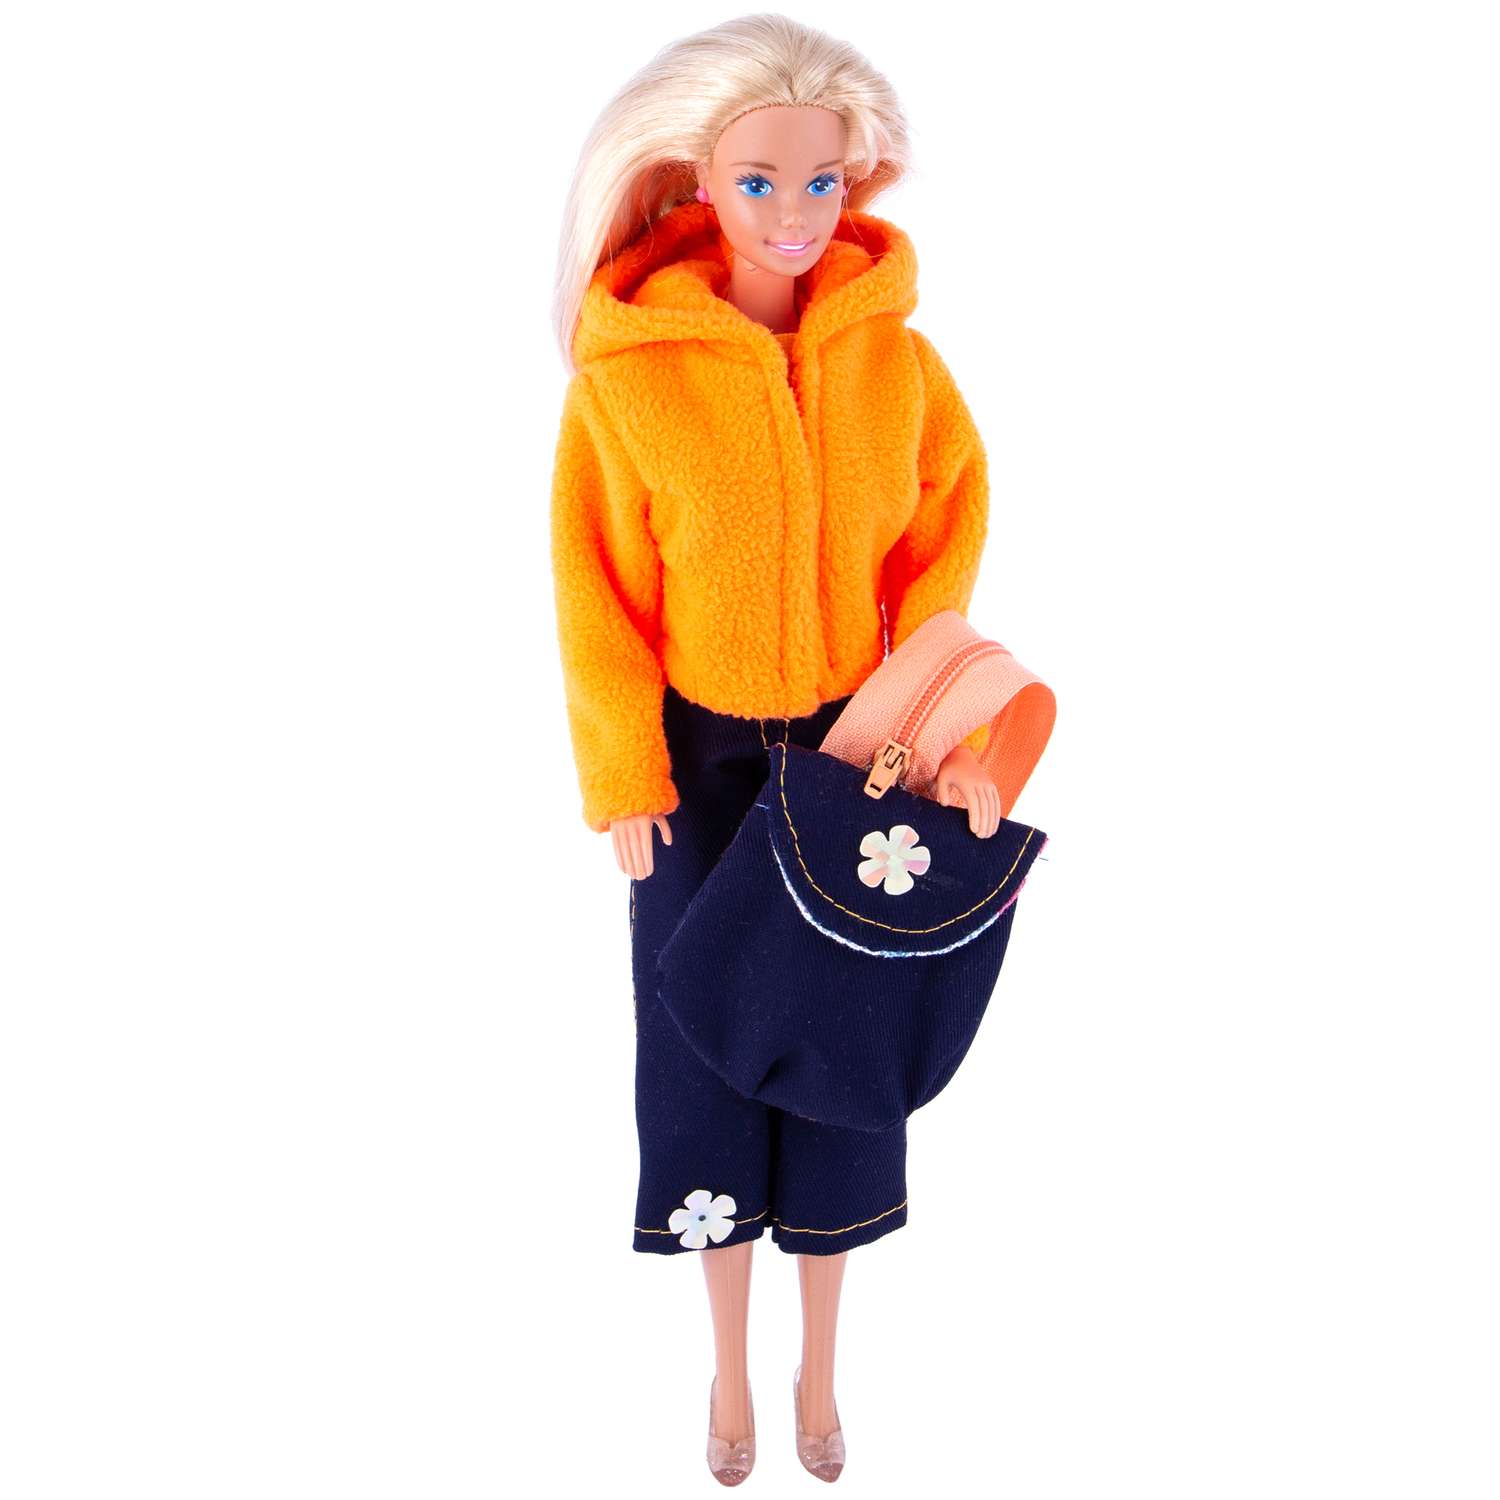 Набор одежды Модница для куклы 29 см: куртка штаны и рюкзак оранжевый 9999оранжевый&amp;синий - фото 2